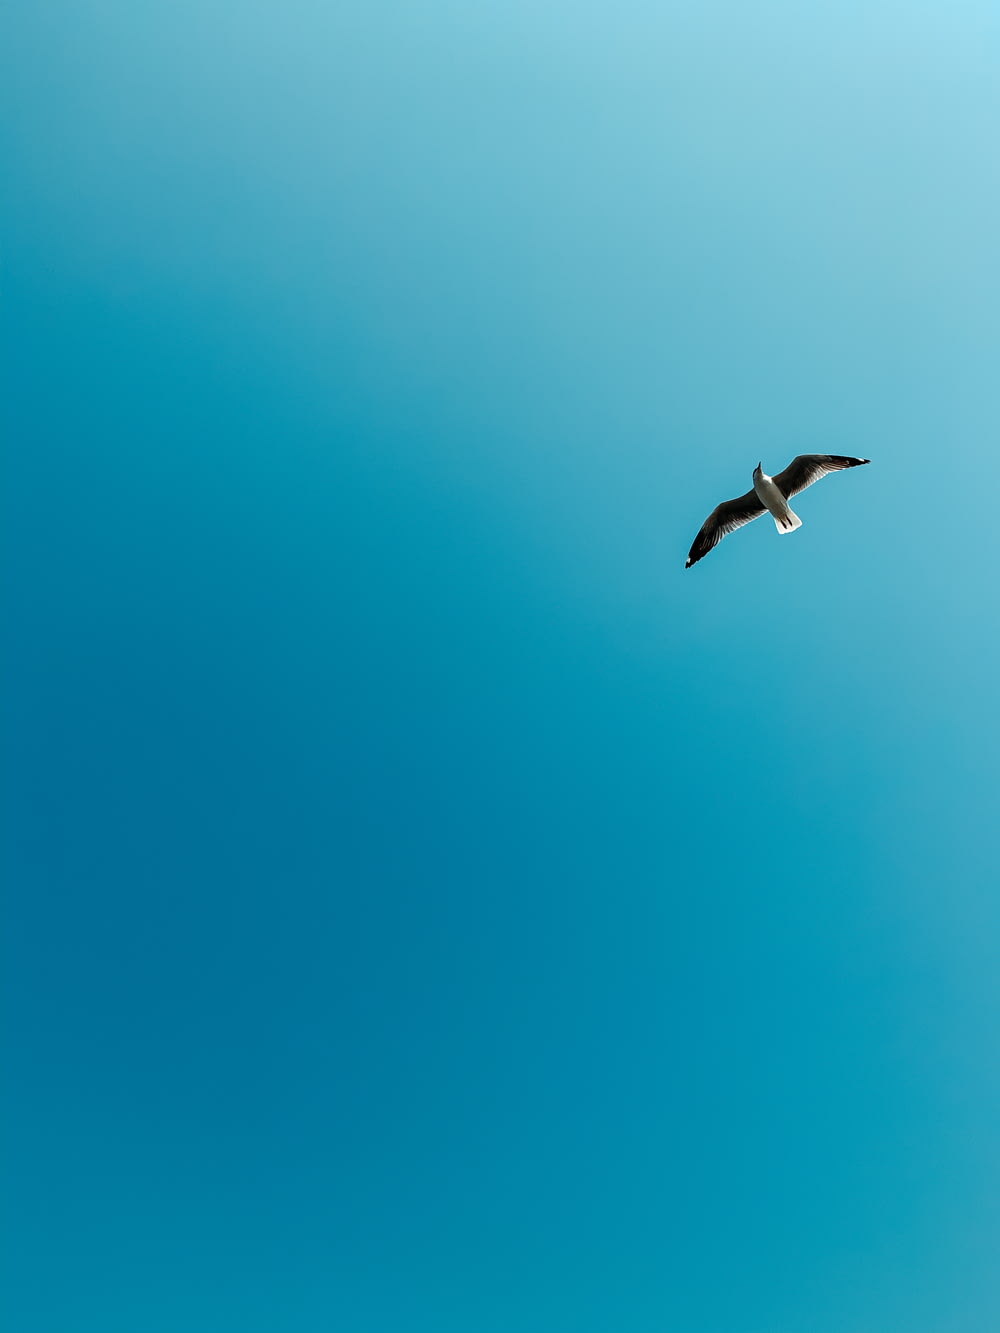 white bird flying under blue sky during daytime